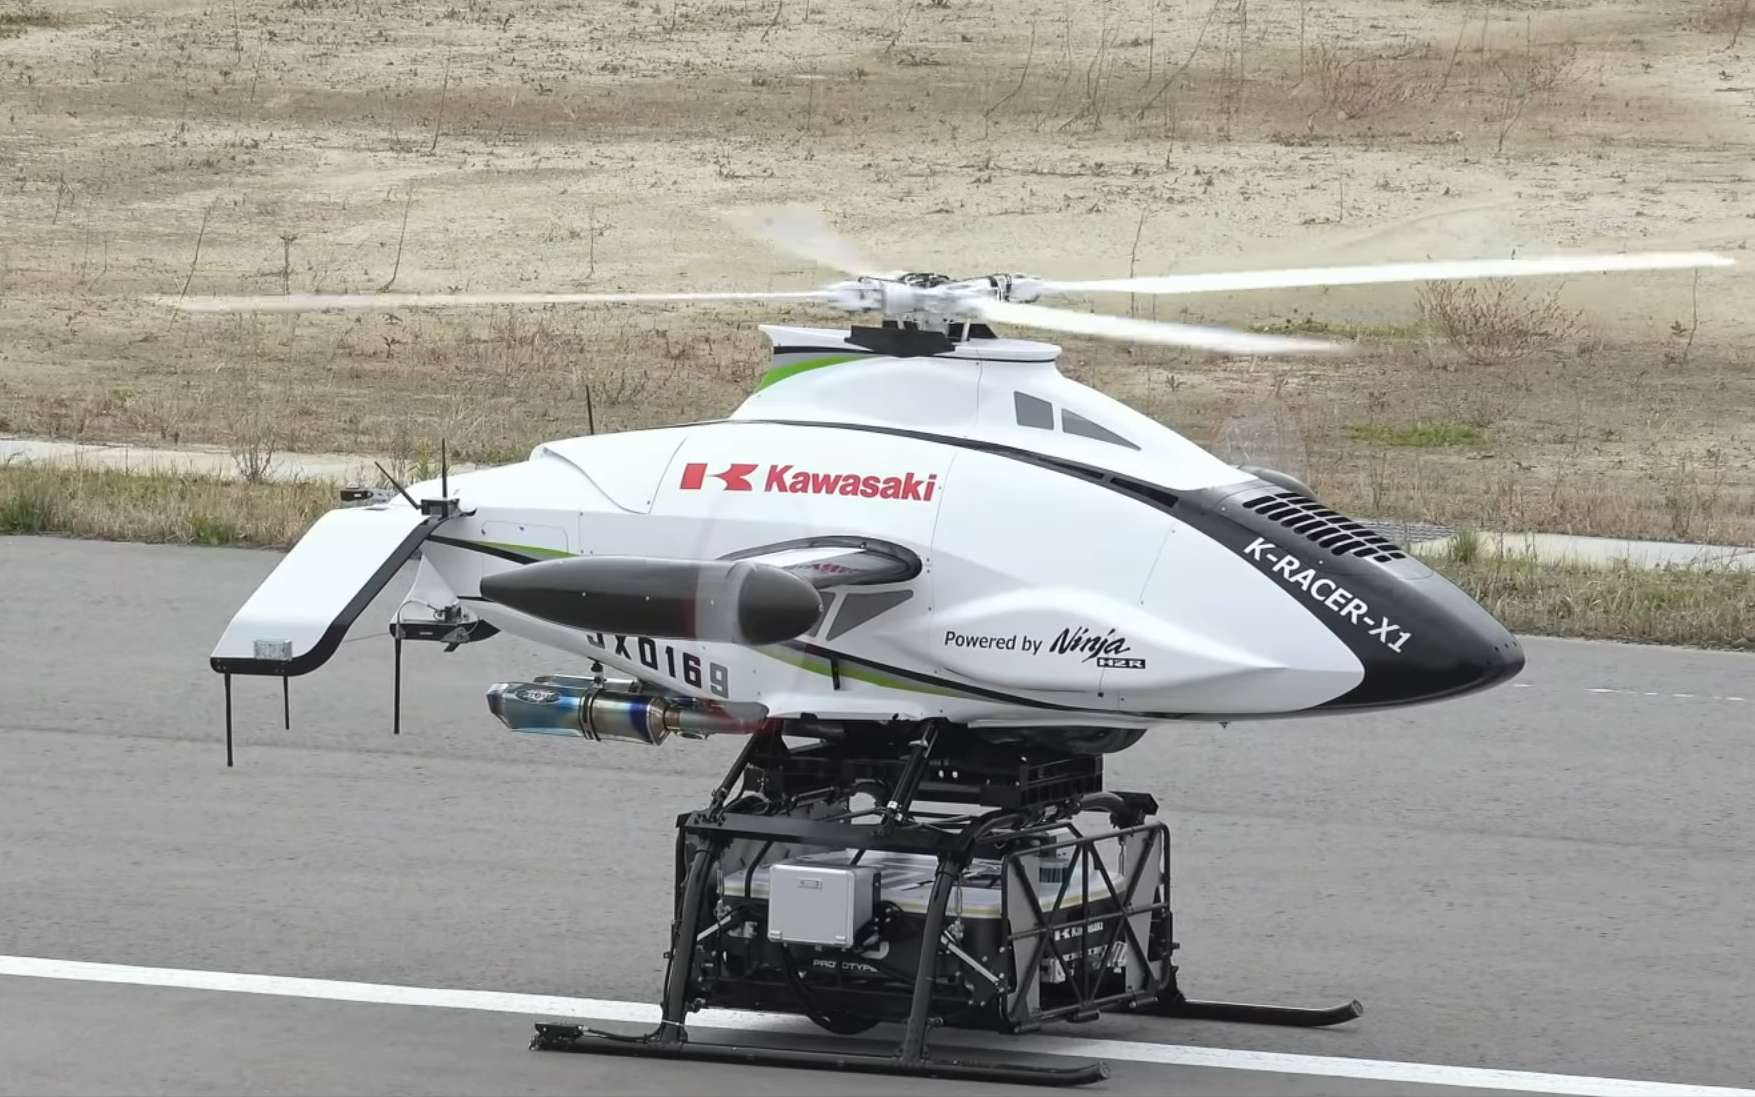 Le drone de livraison K-Racer X1 est un petit hélicoptère hybride qui transporte un second drone. © Kawasaki